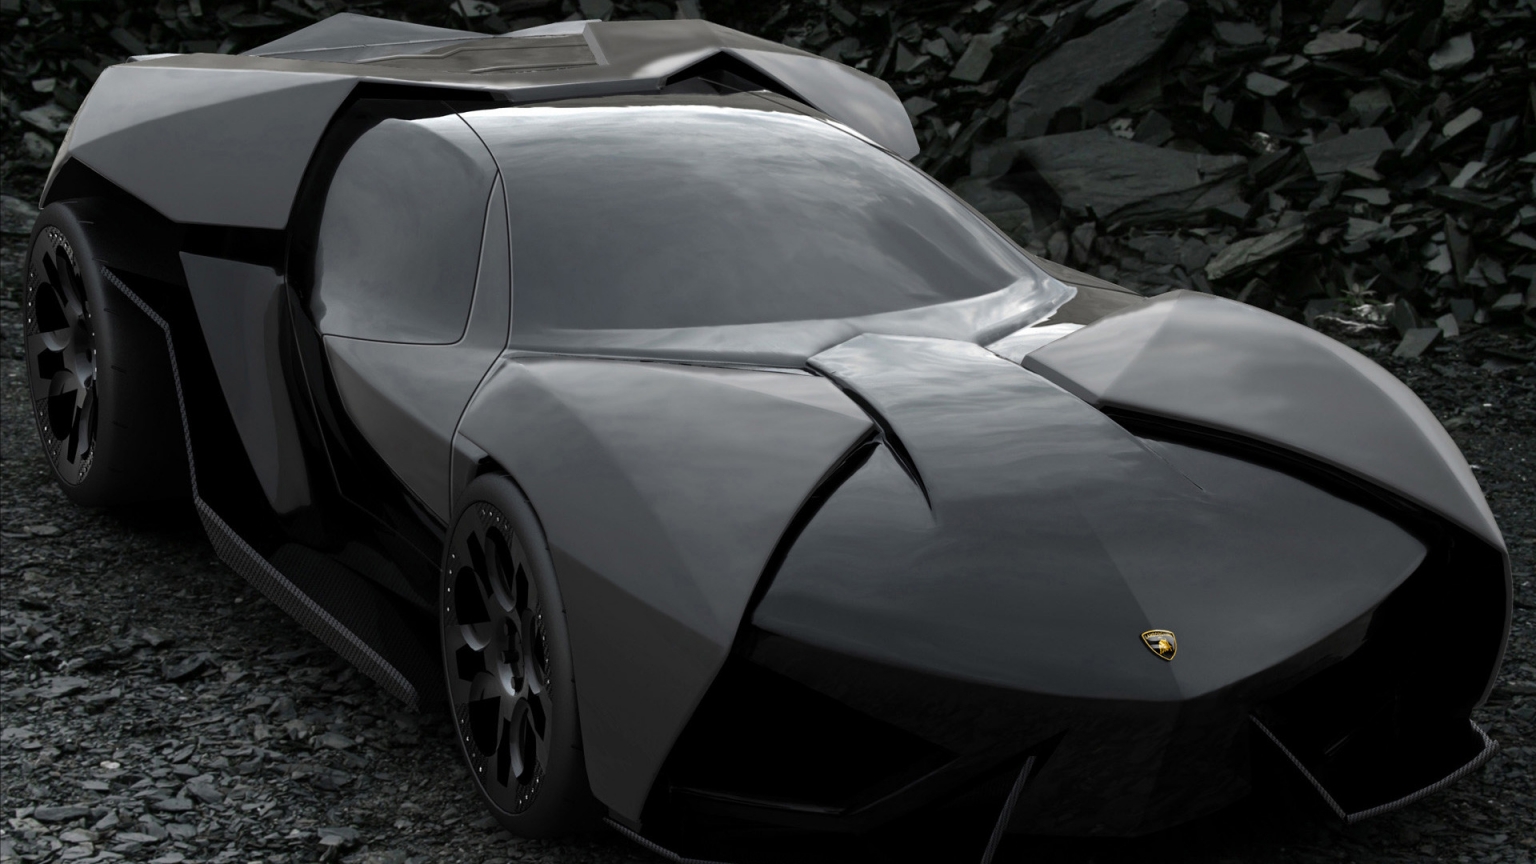 Lamborghini Ankonian Concept for 1536 x 864 HDTV resolution